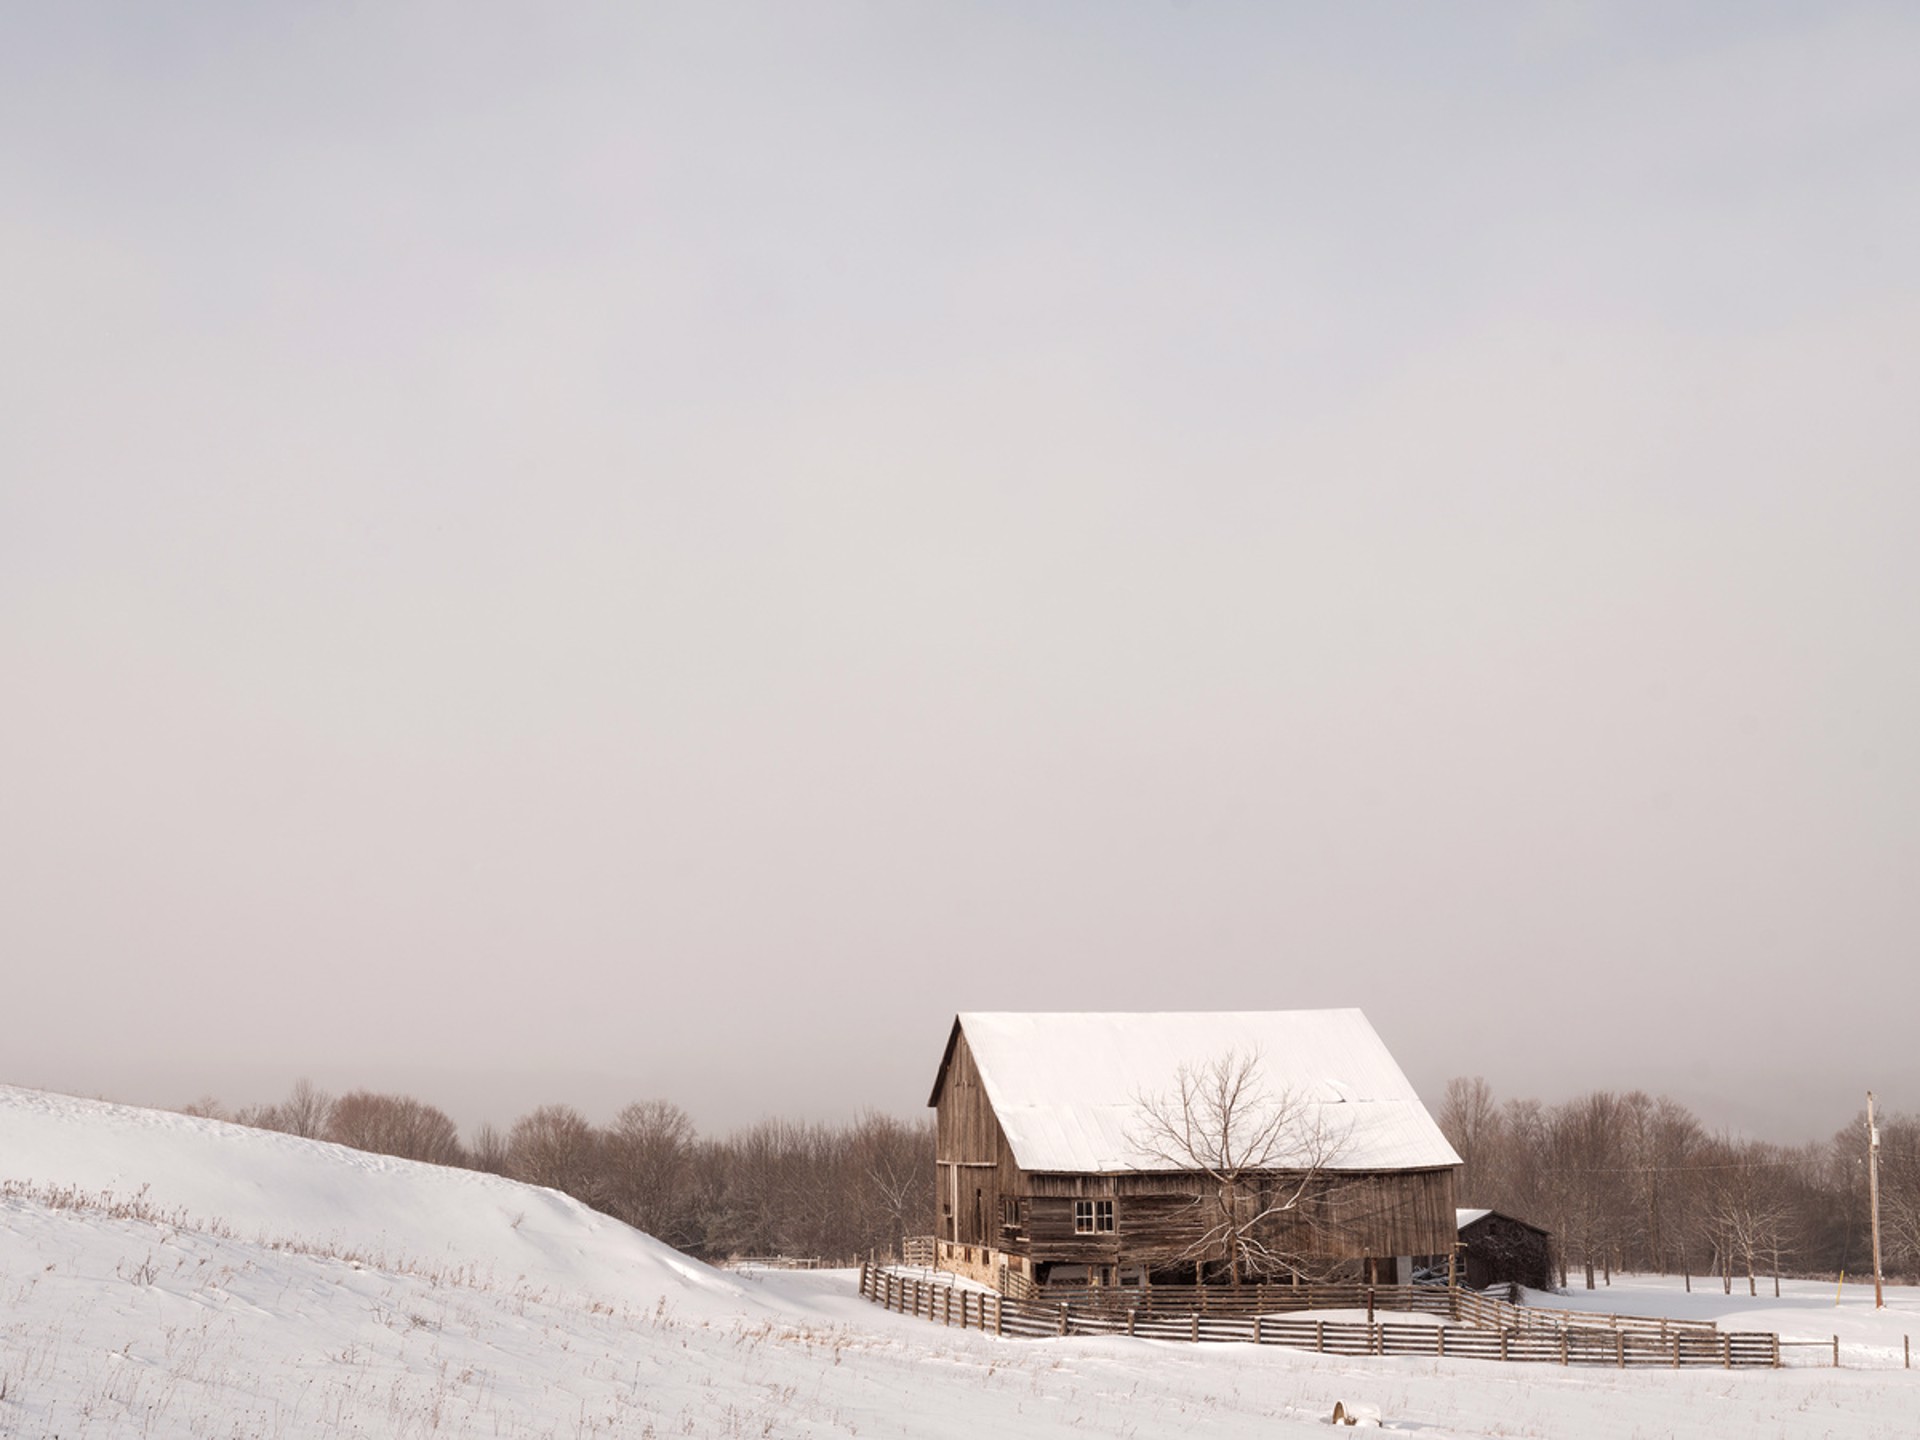 Scenes of winter #4 by Peter McLennan